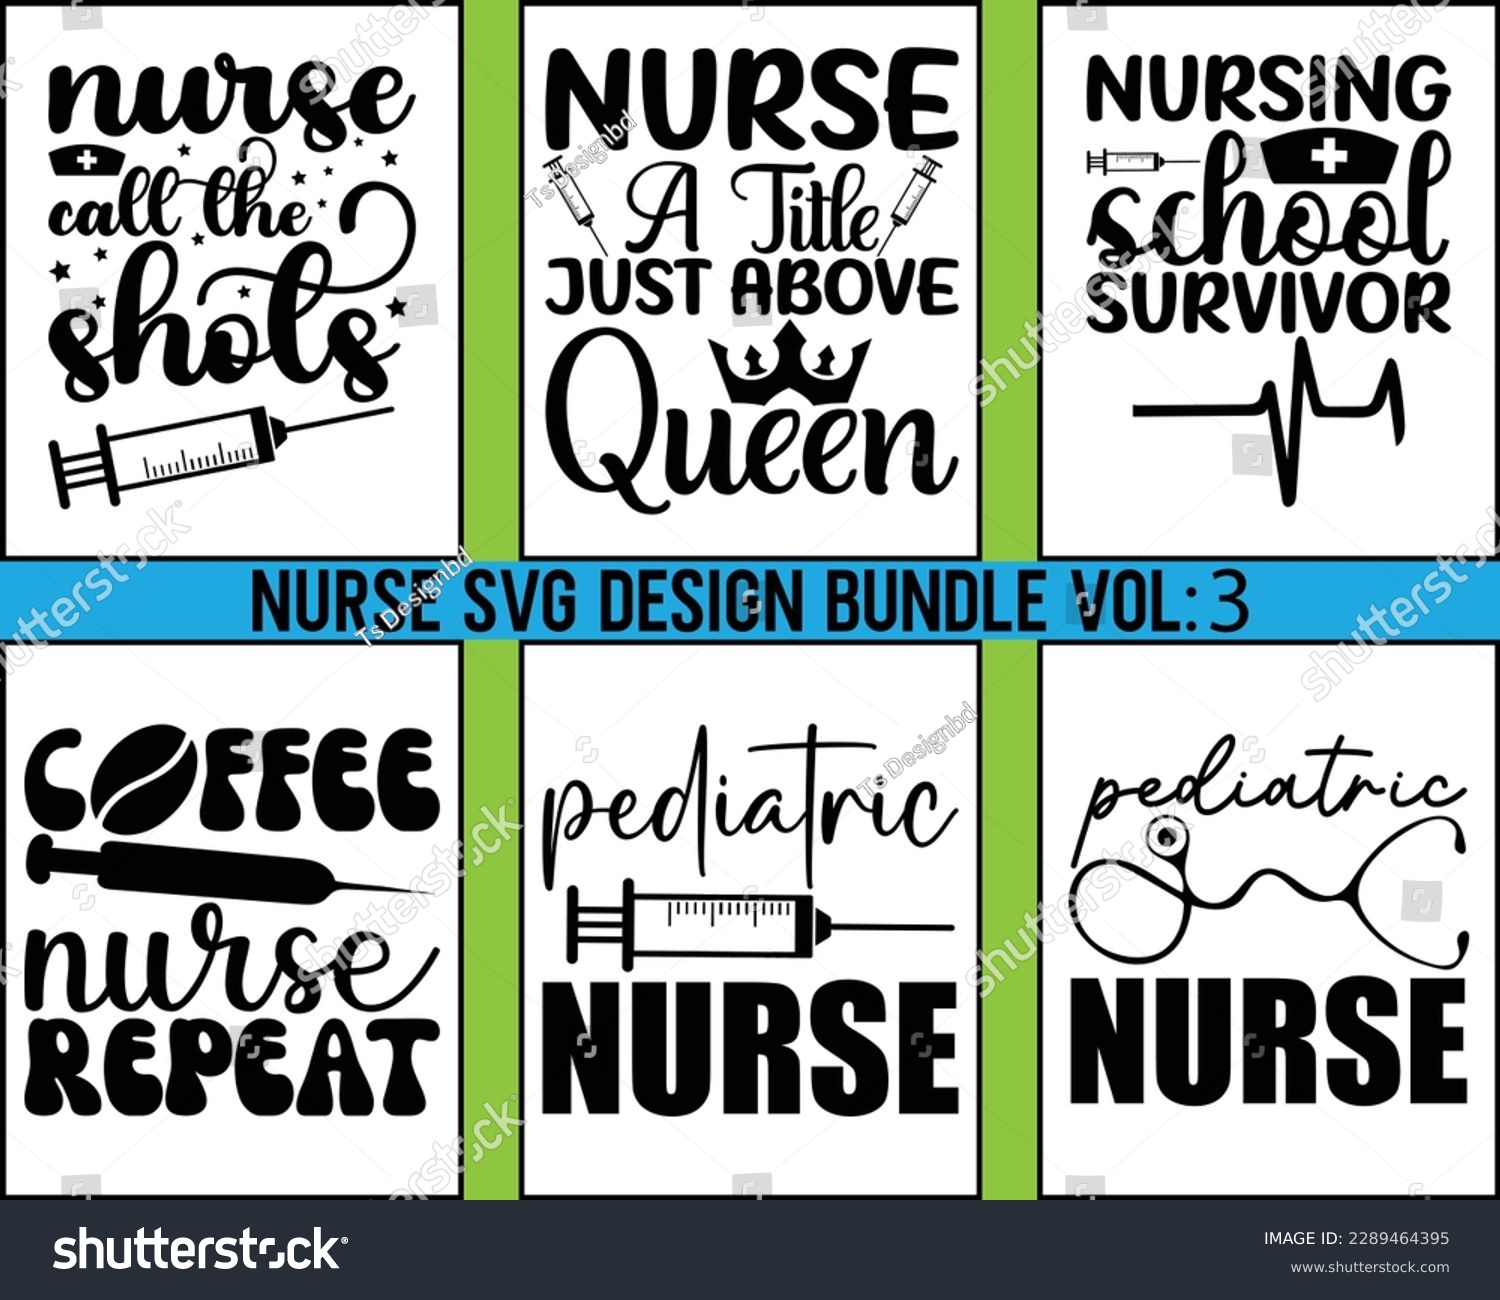 SVG of Nurse Design SVG Bundle  Vol 3, nurse svg bundle, nurse T shirt design, nurse cut file,nurse svg,Nurse Quotes SVG, Doctor Svg,Nurse Life Svg,Nurse Sayings,  svg